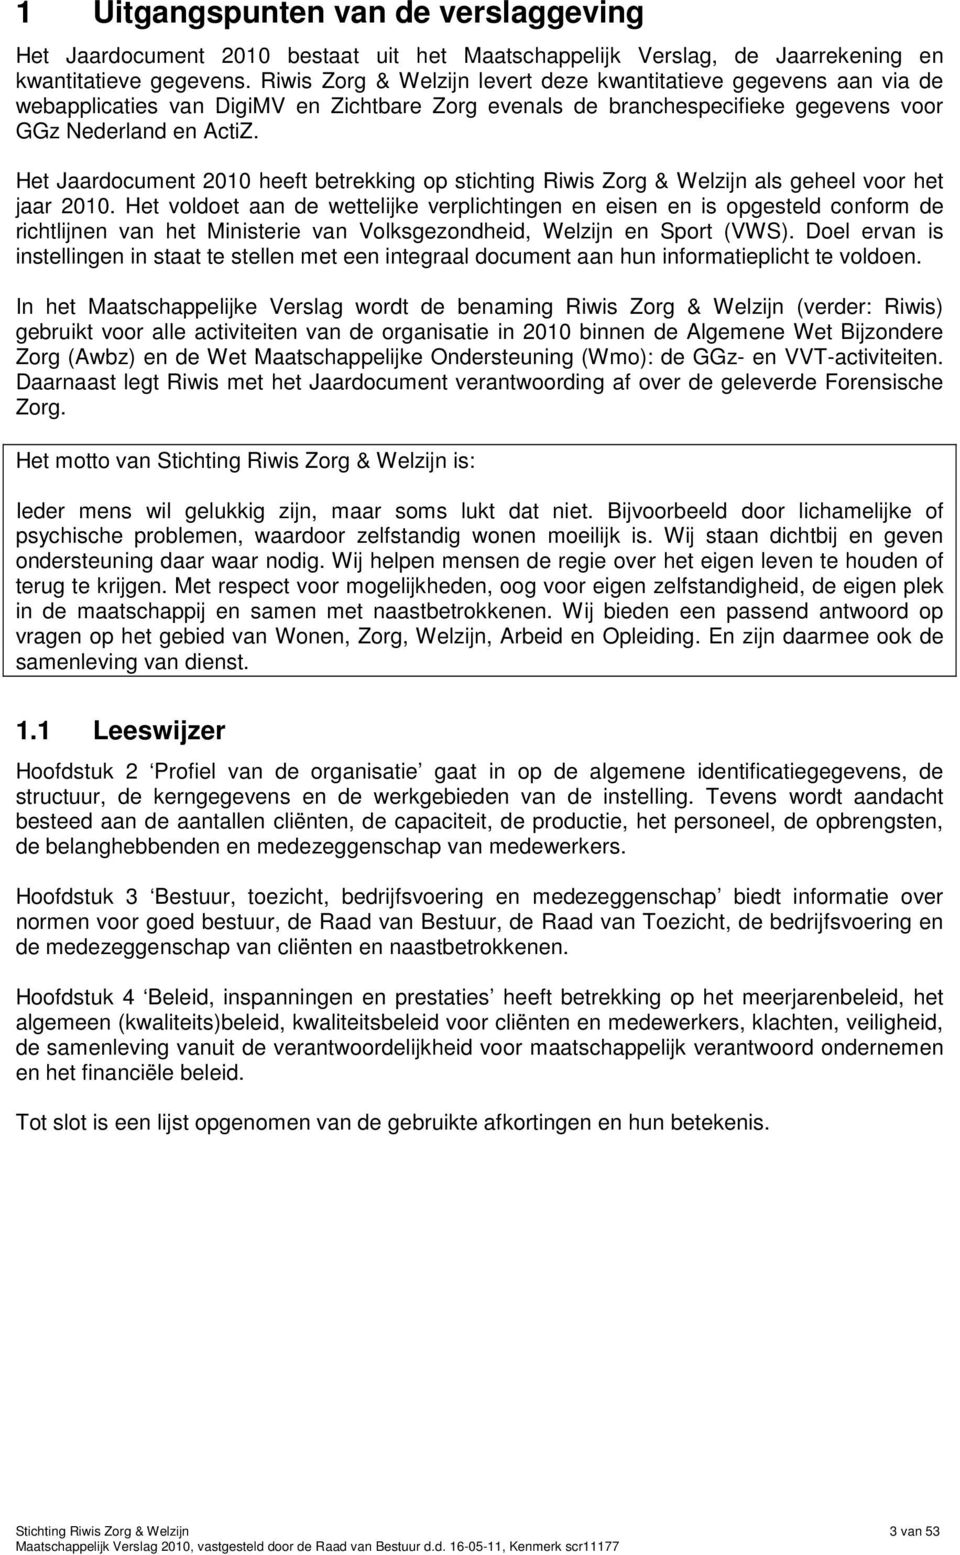 Het Jaardocument 2010 heeft betrekking op stichting Riwis Zorg & Welzijn als geheel voor het jaar 2010.